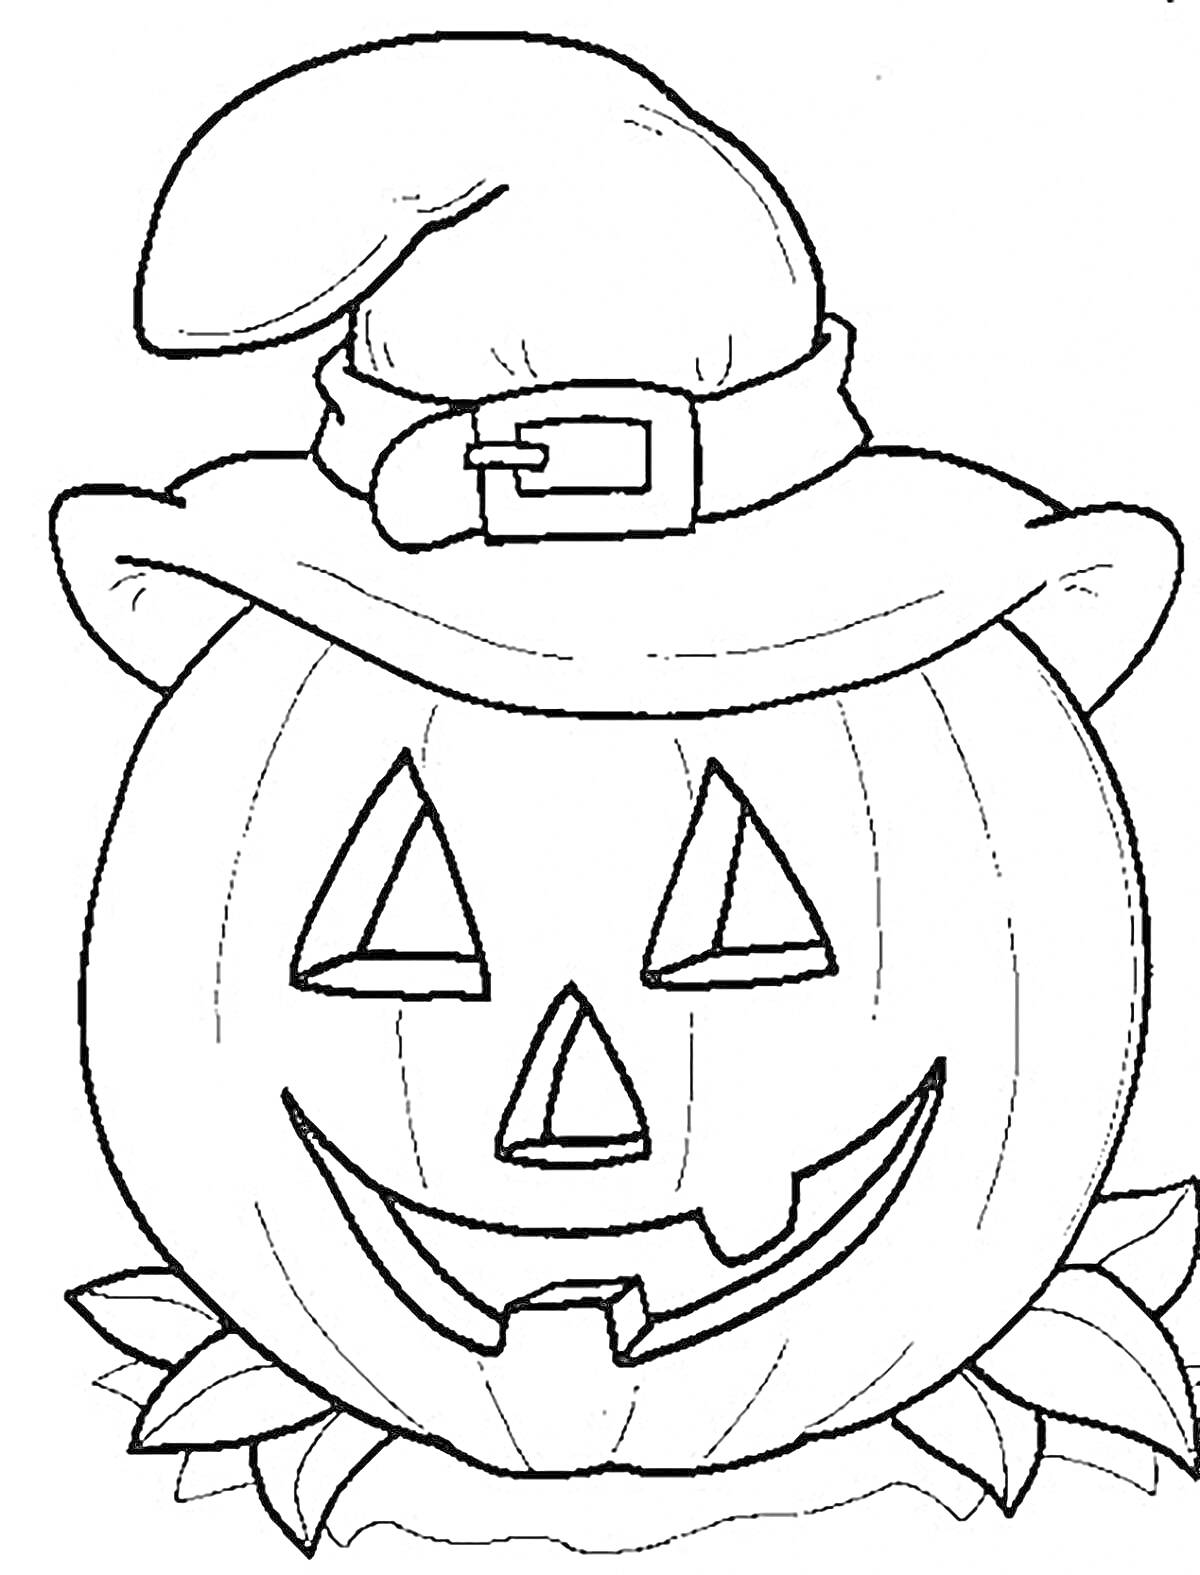 Раскраска Тыква в шляпе ведьмы с вырезанным лицом и листьями внизу